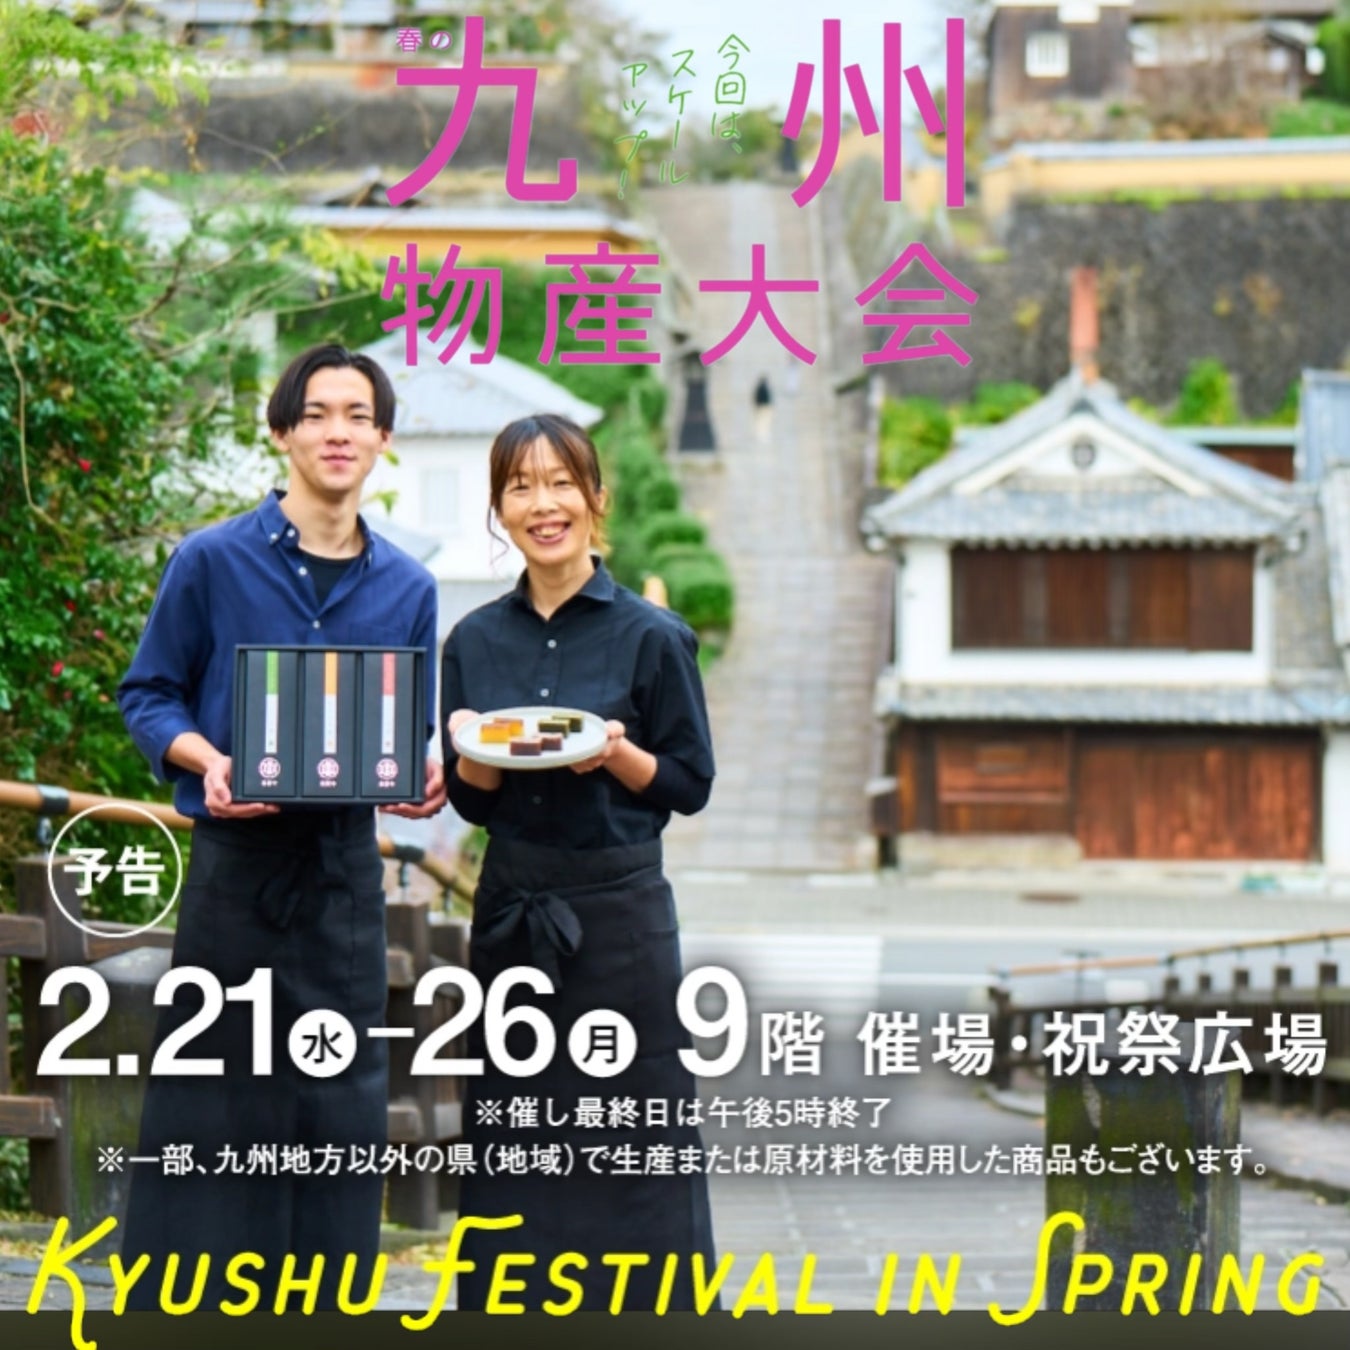 京都祇園あのんホームページ・オンラインショップリニューアル。お買い物がとても便利になりました。2/19まで新規会員登録で500ptプレゼントキャンペーン。